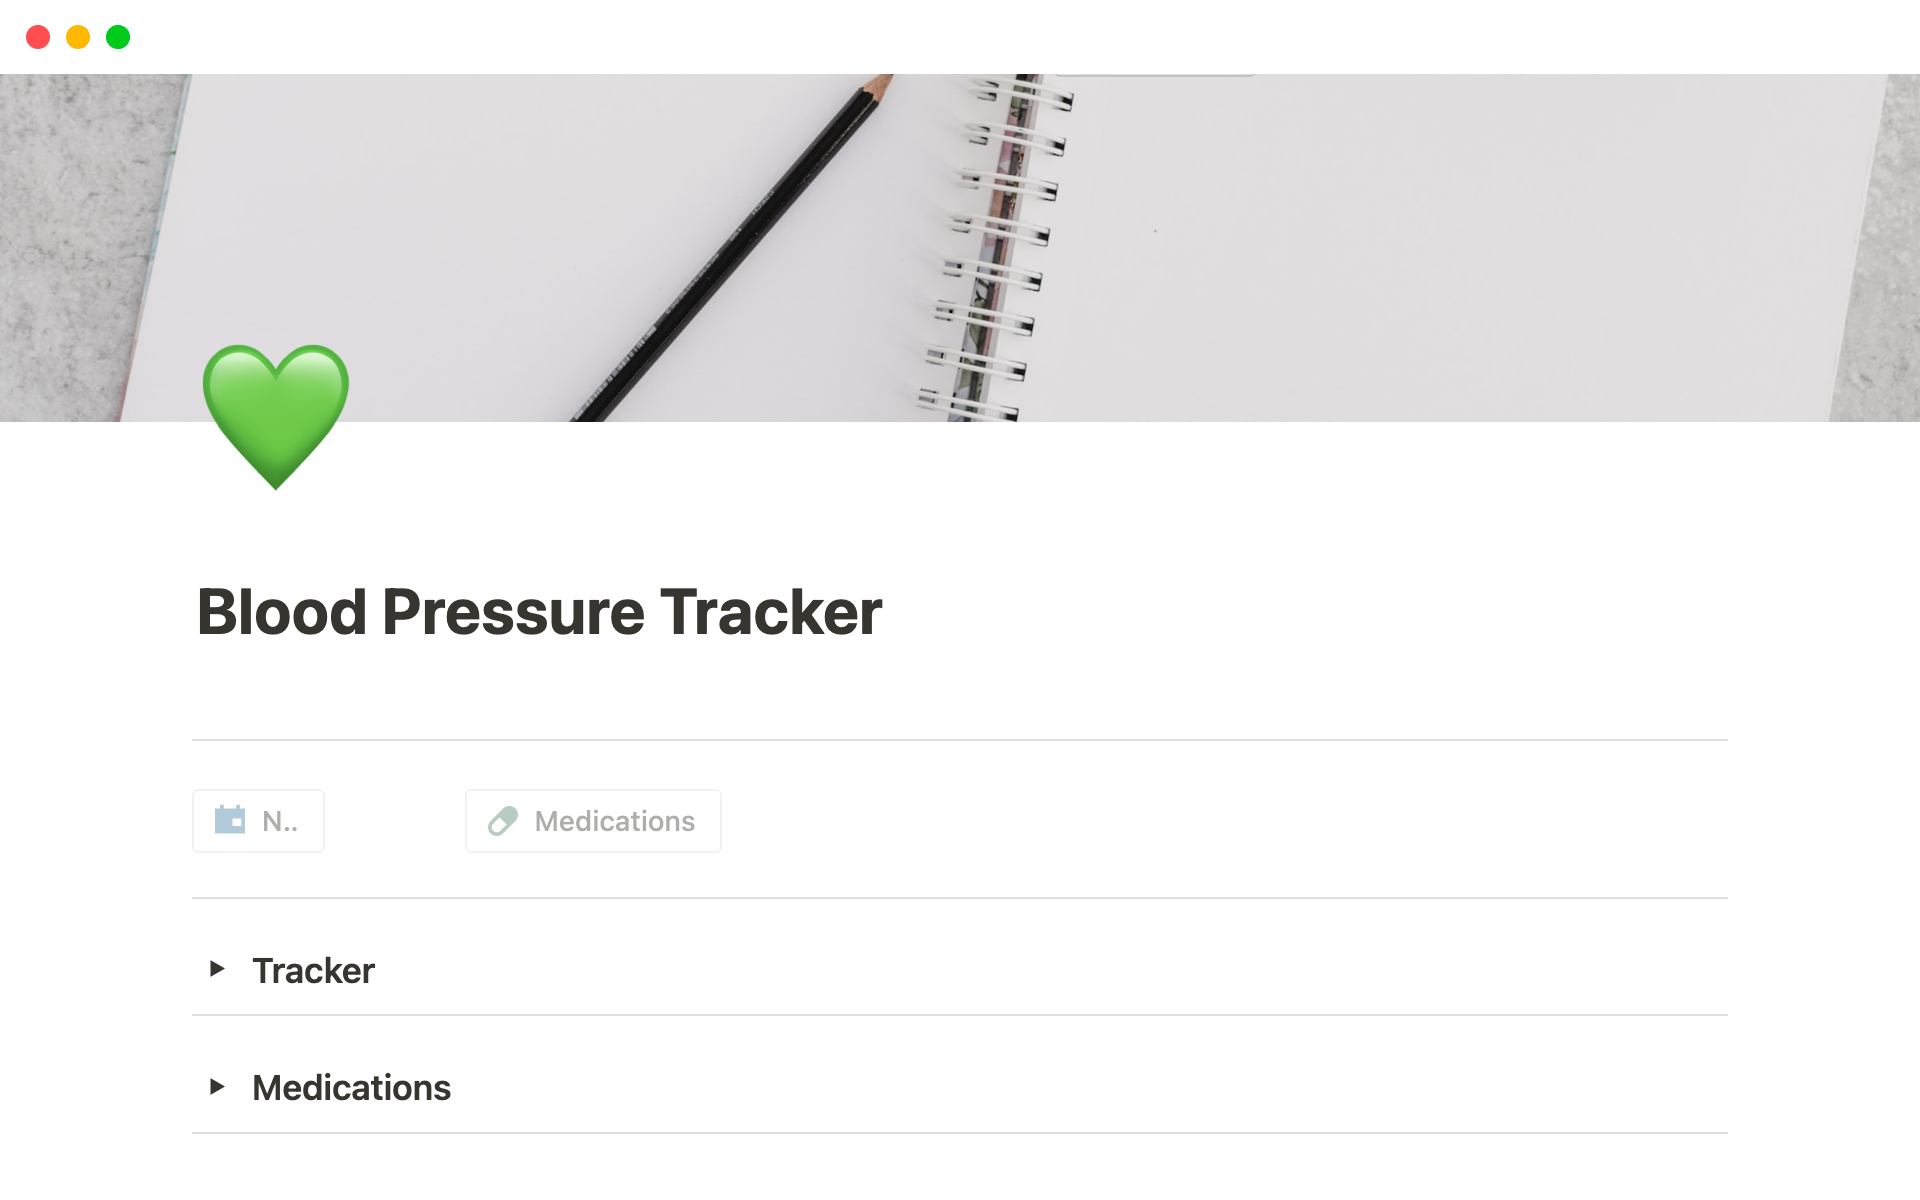 Vista previa de plantilla para Blood Pressure Tracker